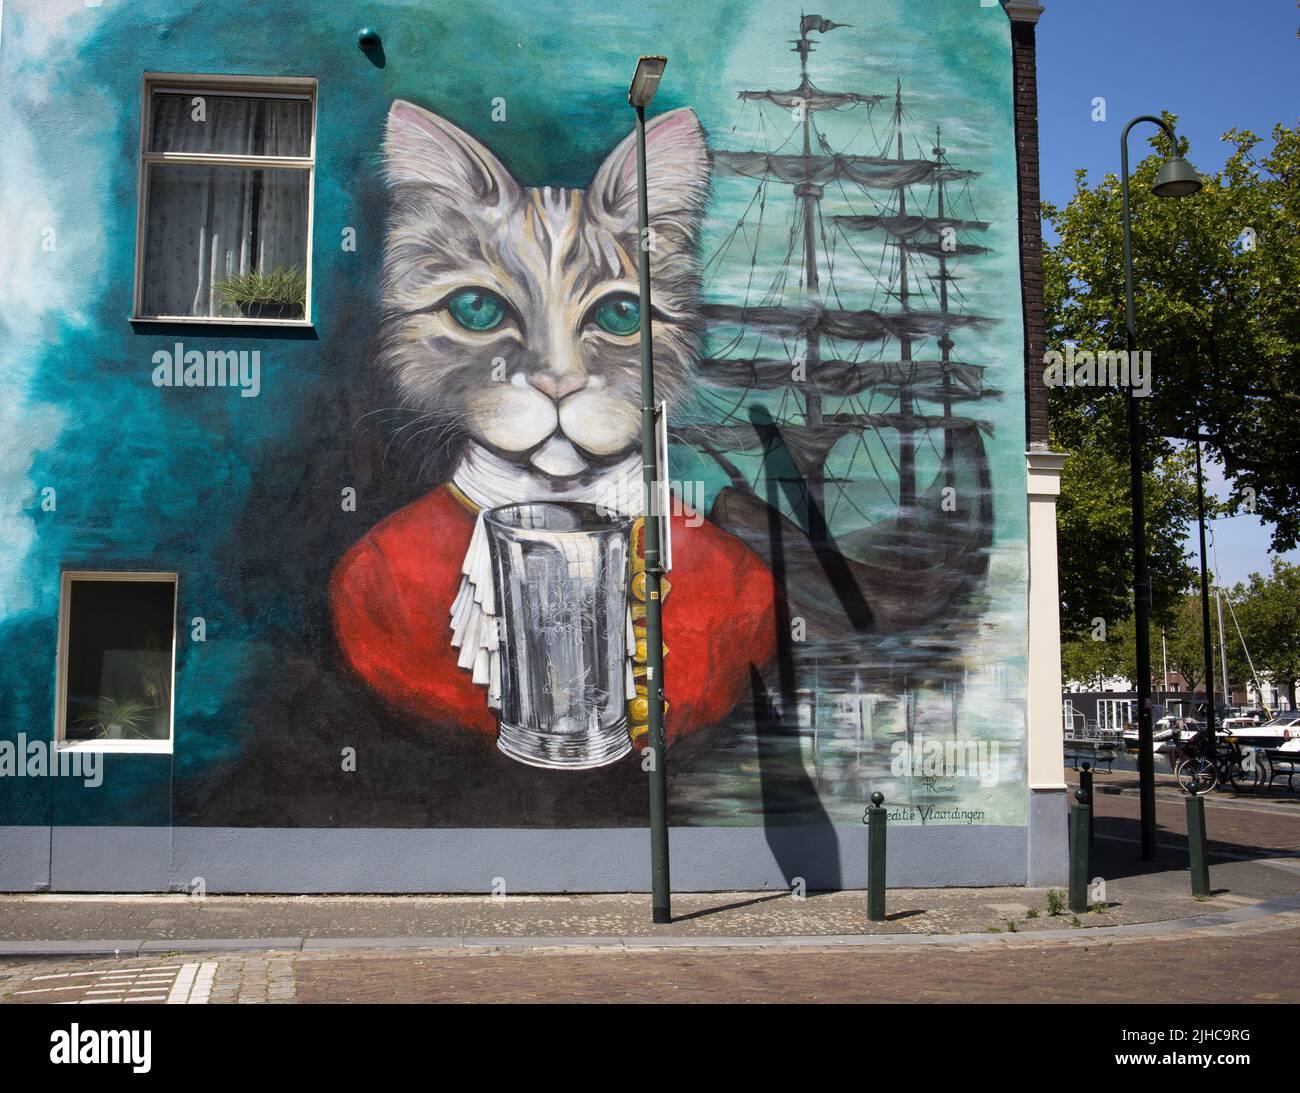 Vlaardingen, Niederlande - 14. JULI 2022: Wandgemälde der Legende vom Katzenbecher in der Innenstadt von Vlaardingen. Alte holländische Volksgeschichte. Stockfoto